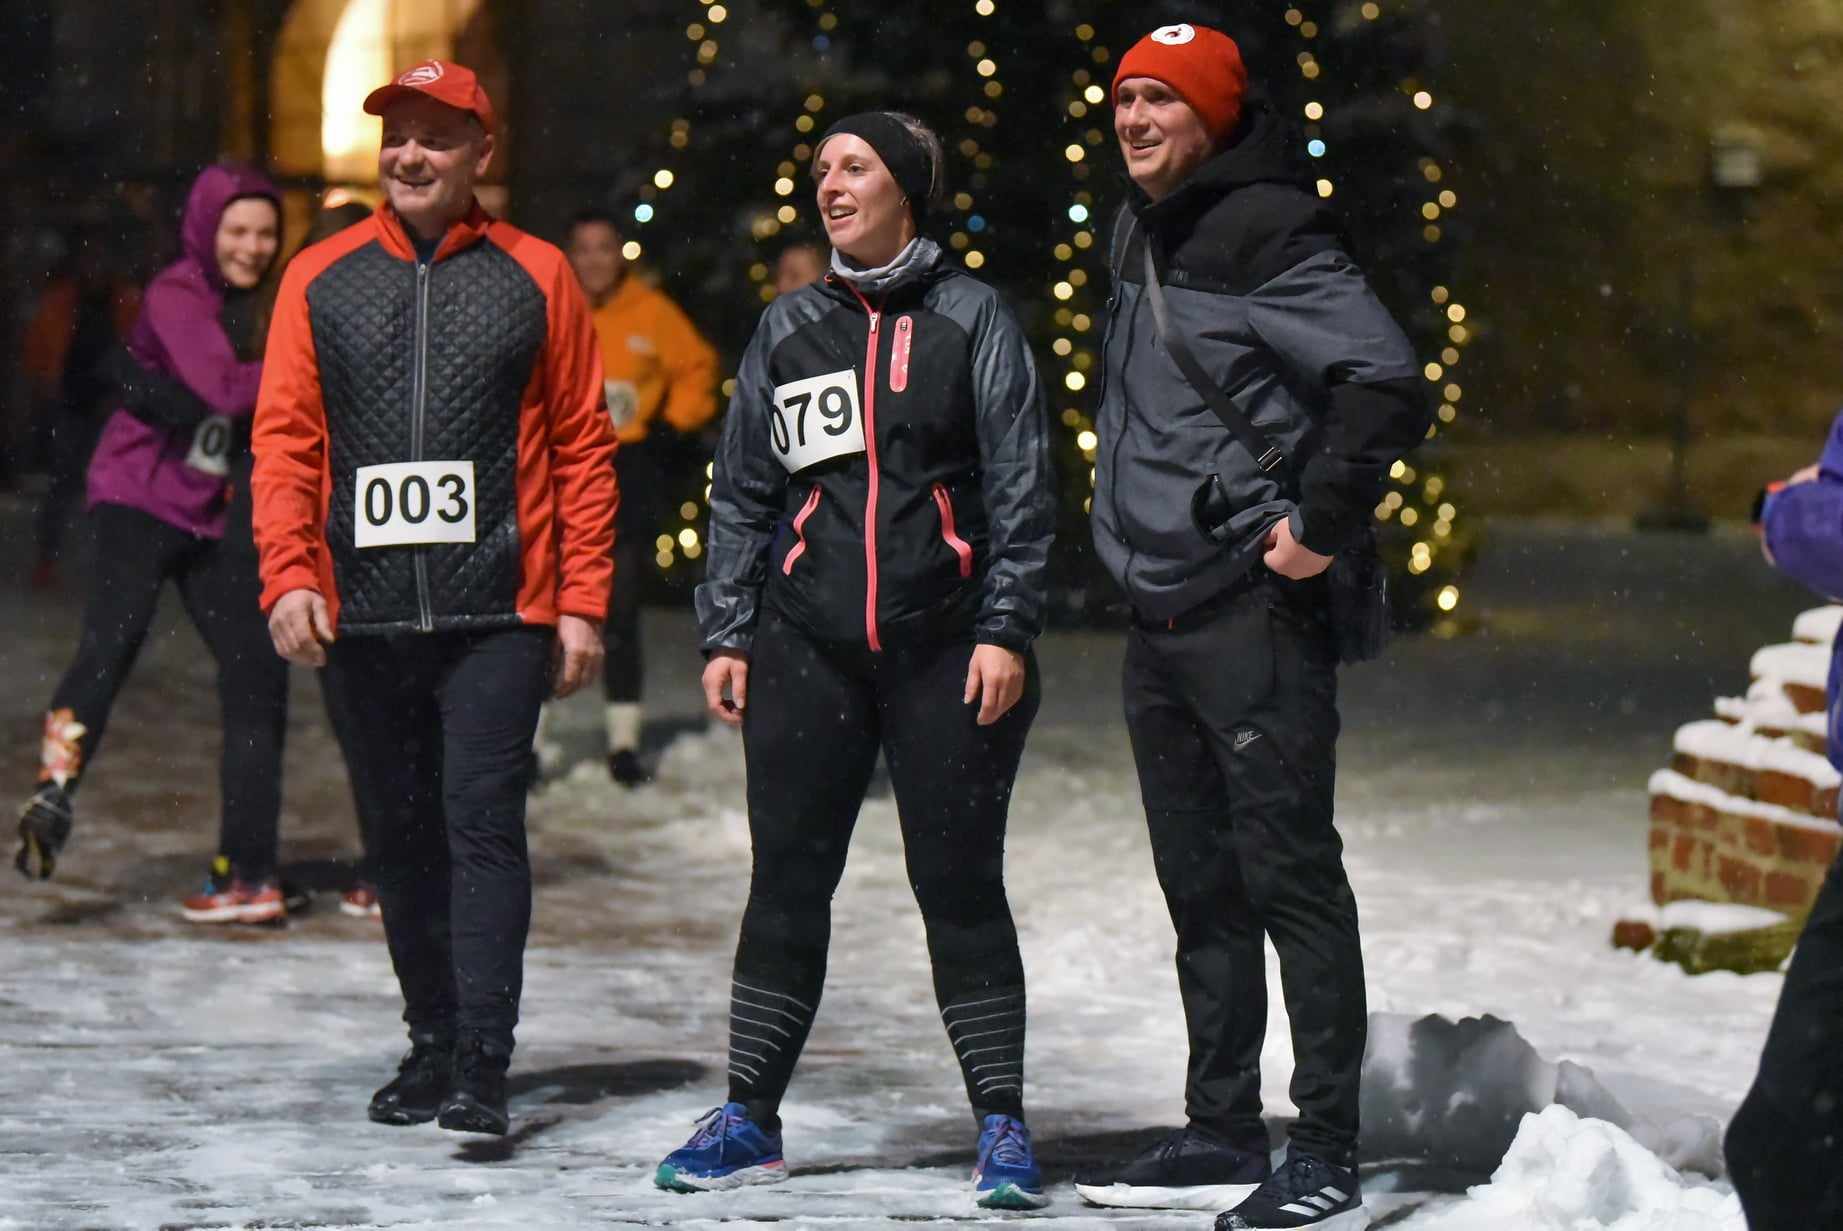 Sudionici prvog kola Zimske lige trčanja